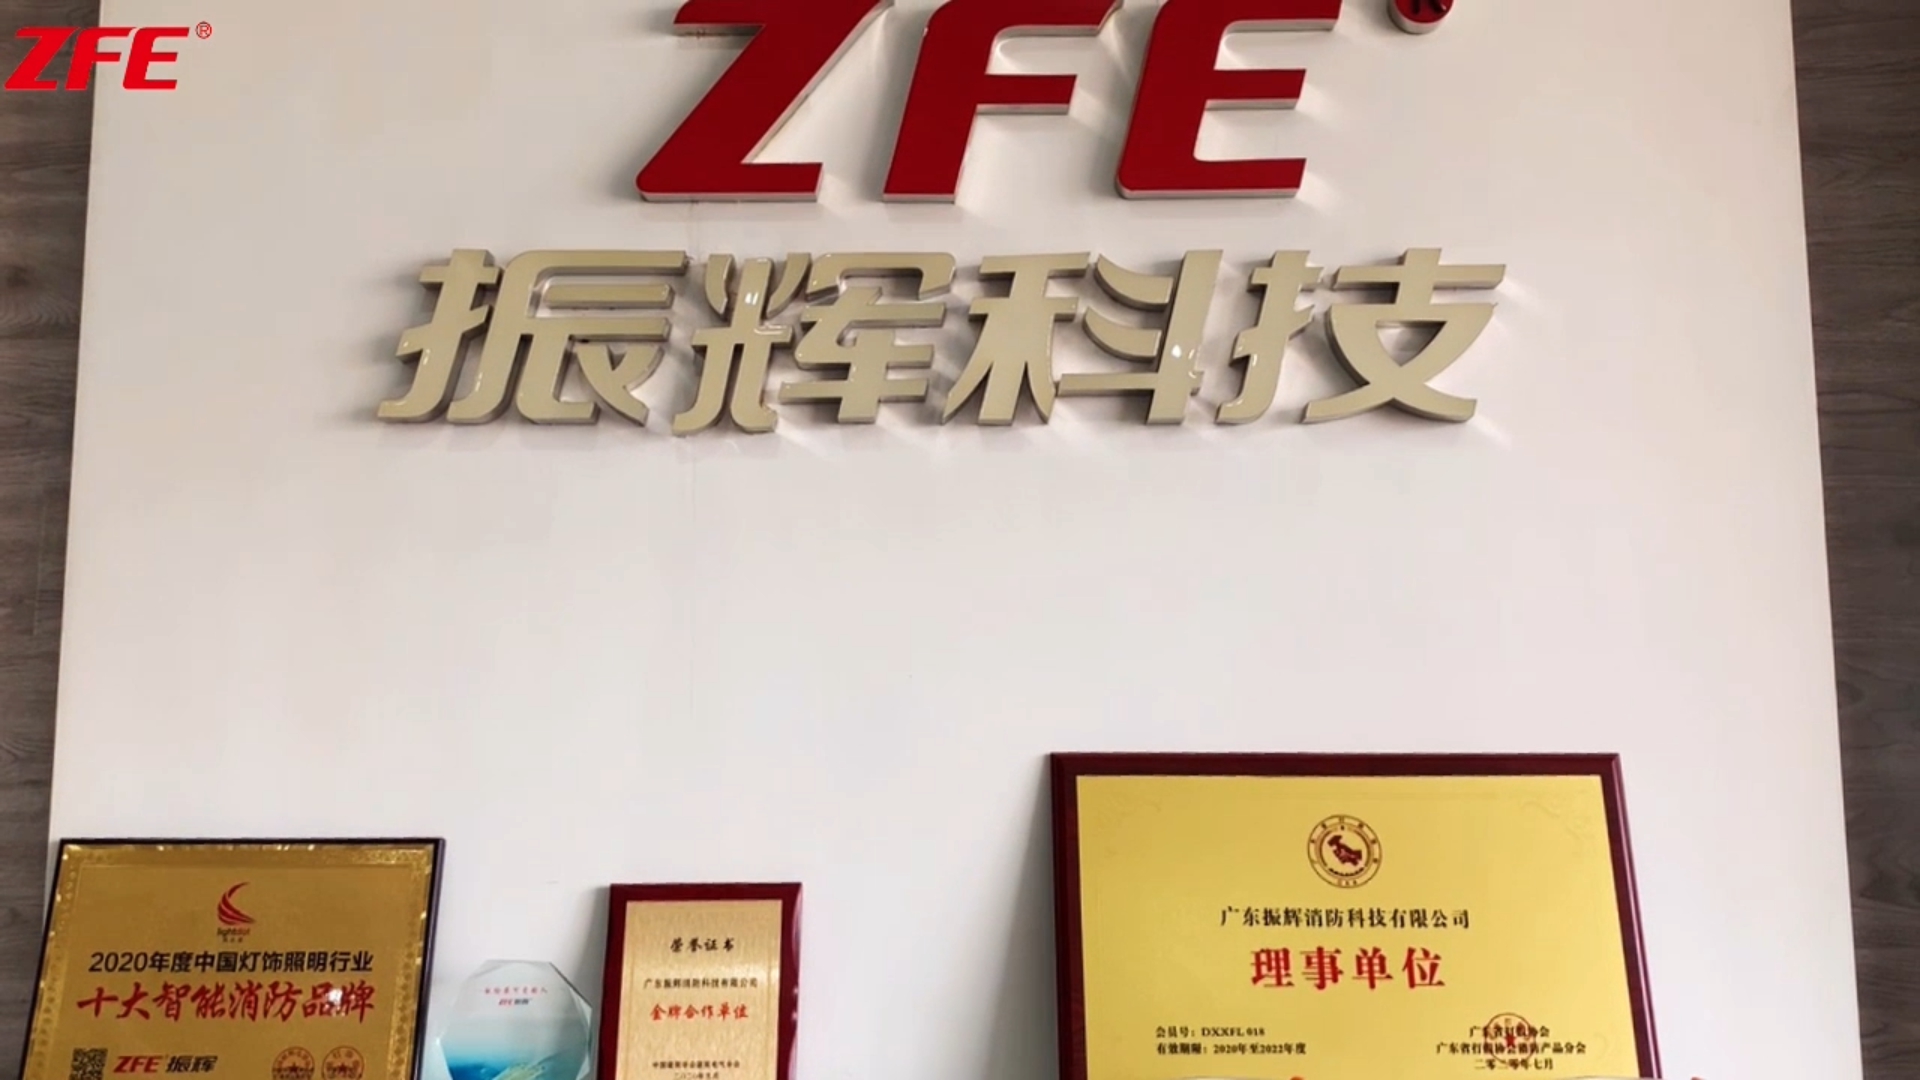 Tagann cumainn tionscail chun cuairt a thabhairt ar Guangdong Zhenhui Fire Technology Co., Ltd.